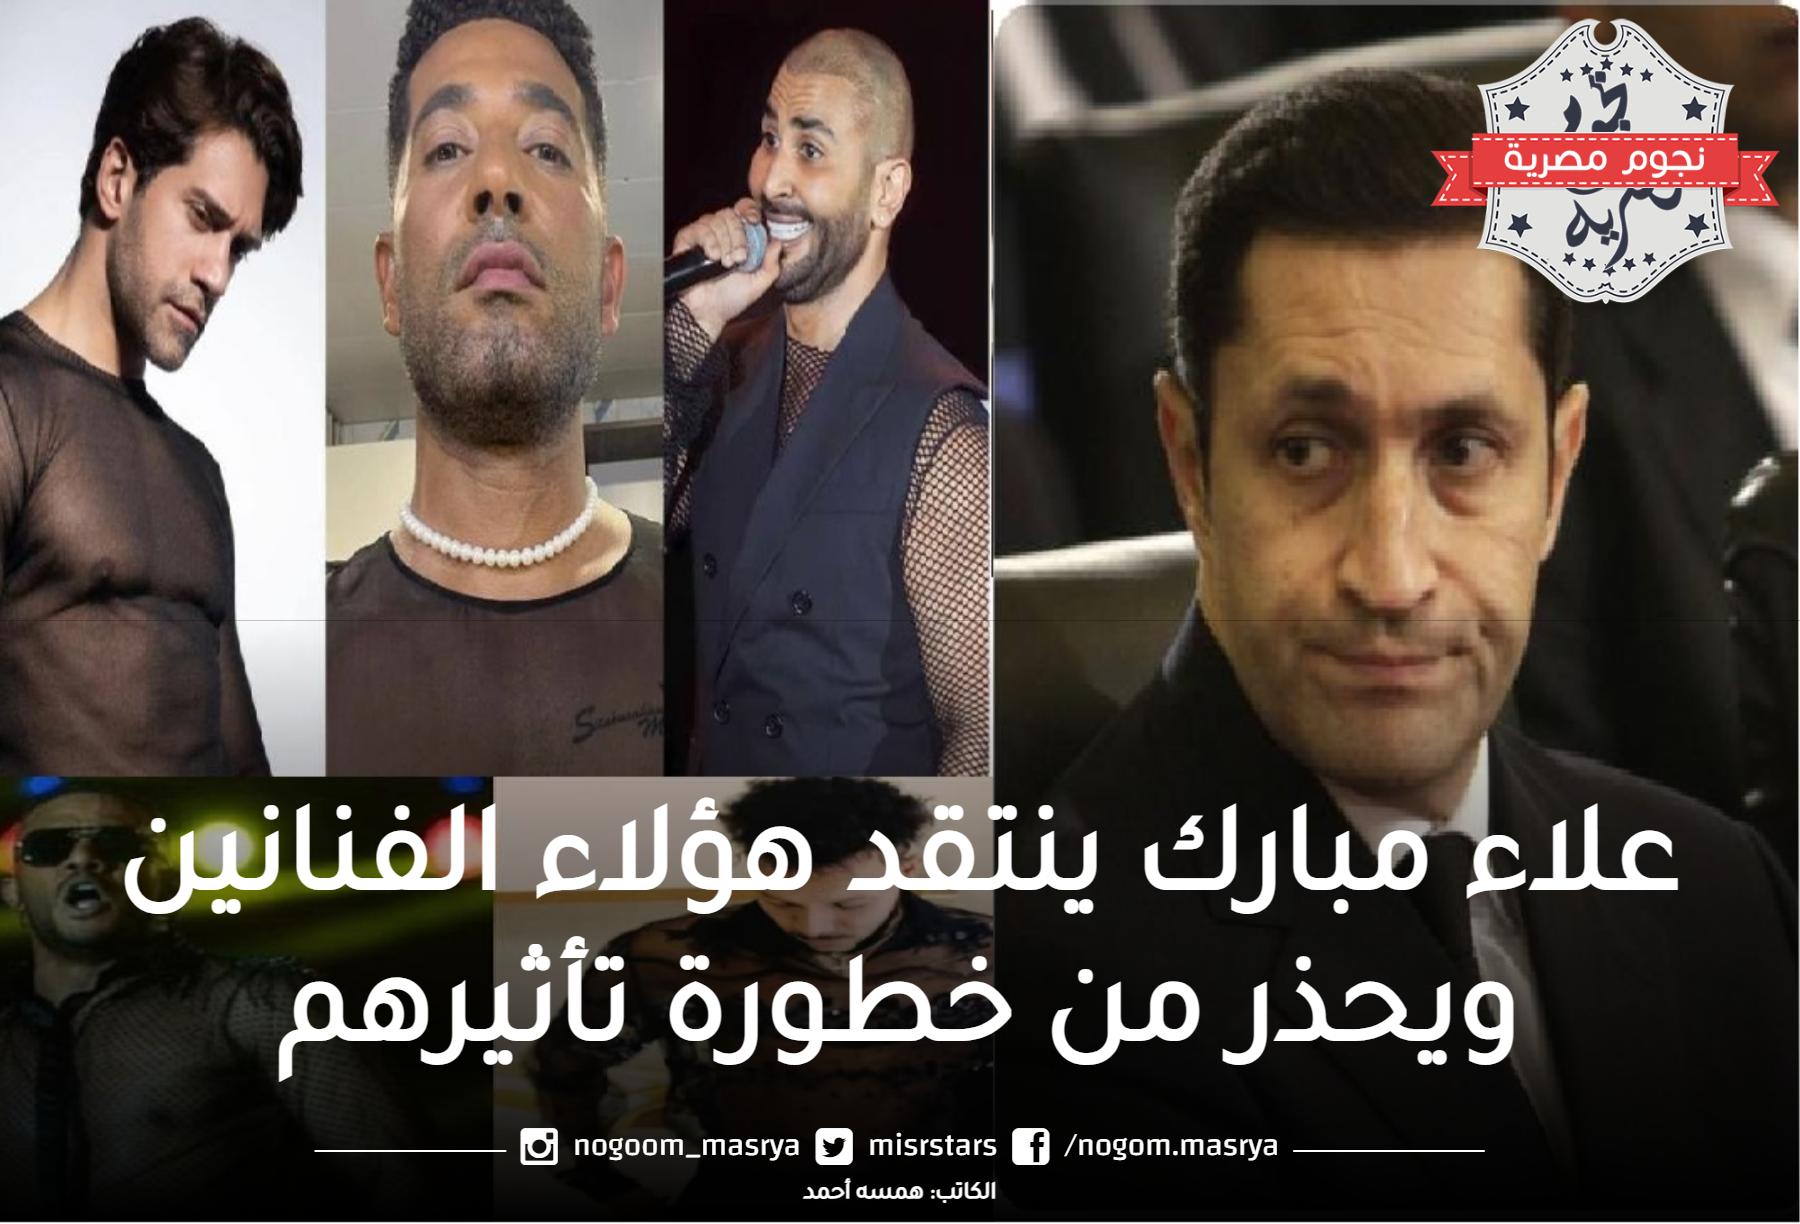 بعد ظهور أحمد سعد المثير للجدل.. علاء مبارك ينتقد هؤلاء الفنانين ويحذر من خطورة تأثيرهم